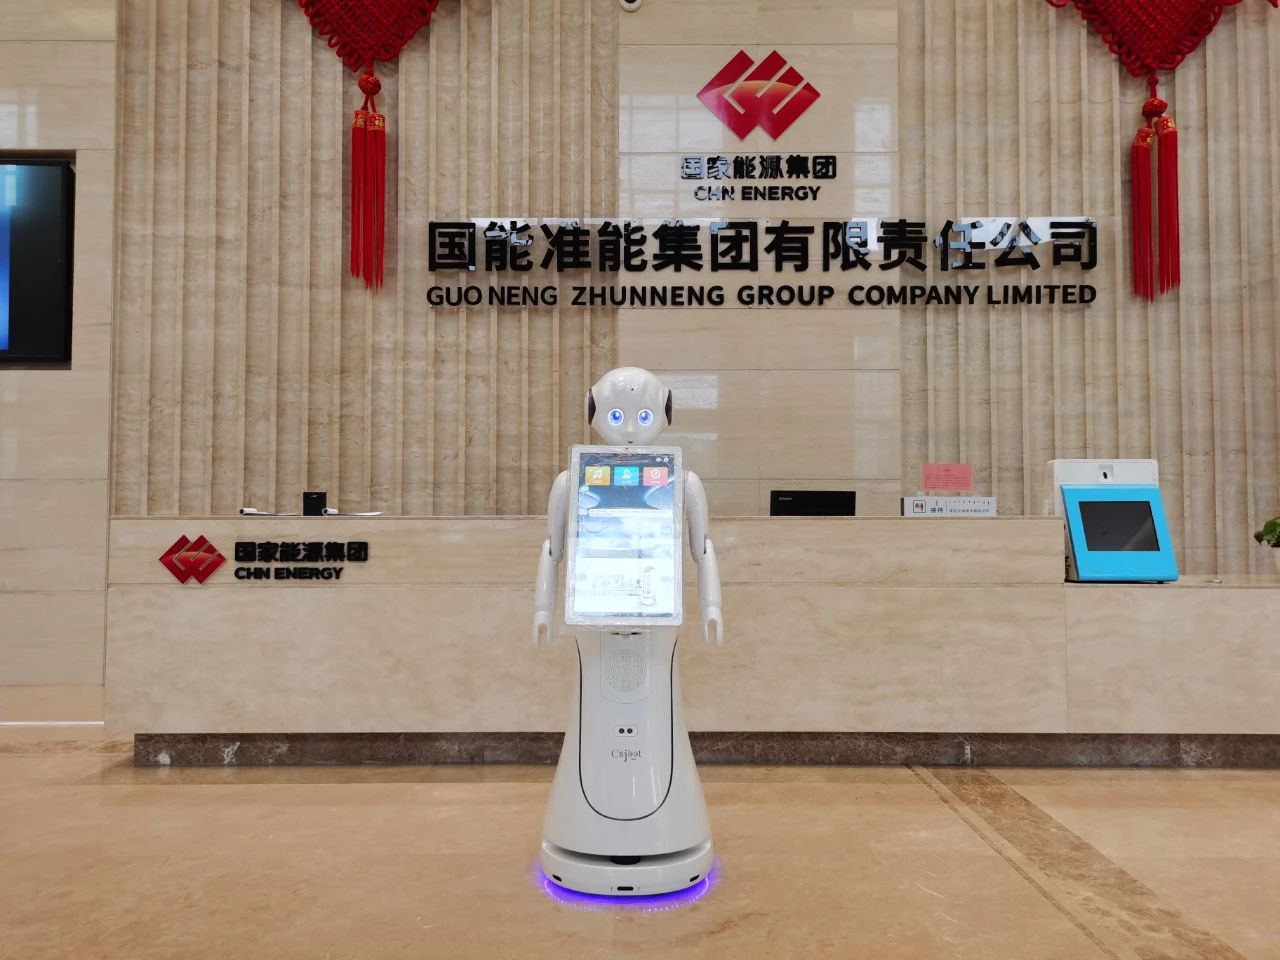 מונגוליה הפנימית Edos Zheneng Group, Robot Docent כבר באינטרנט ~